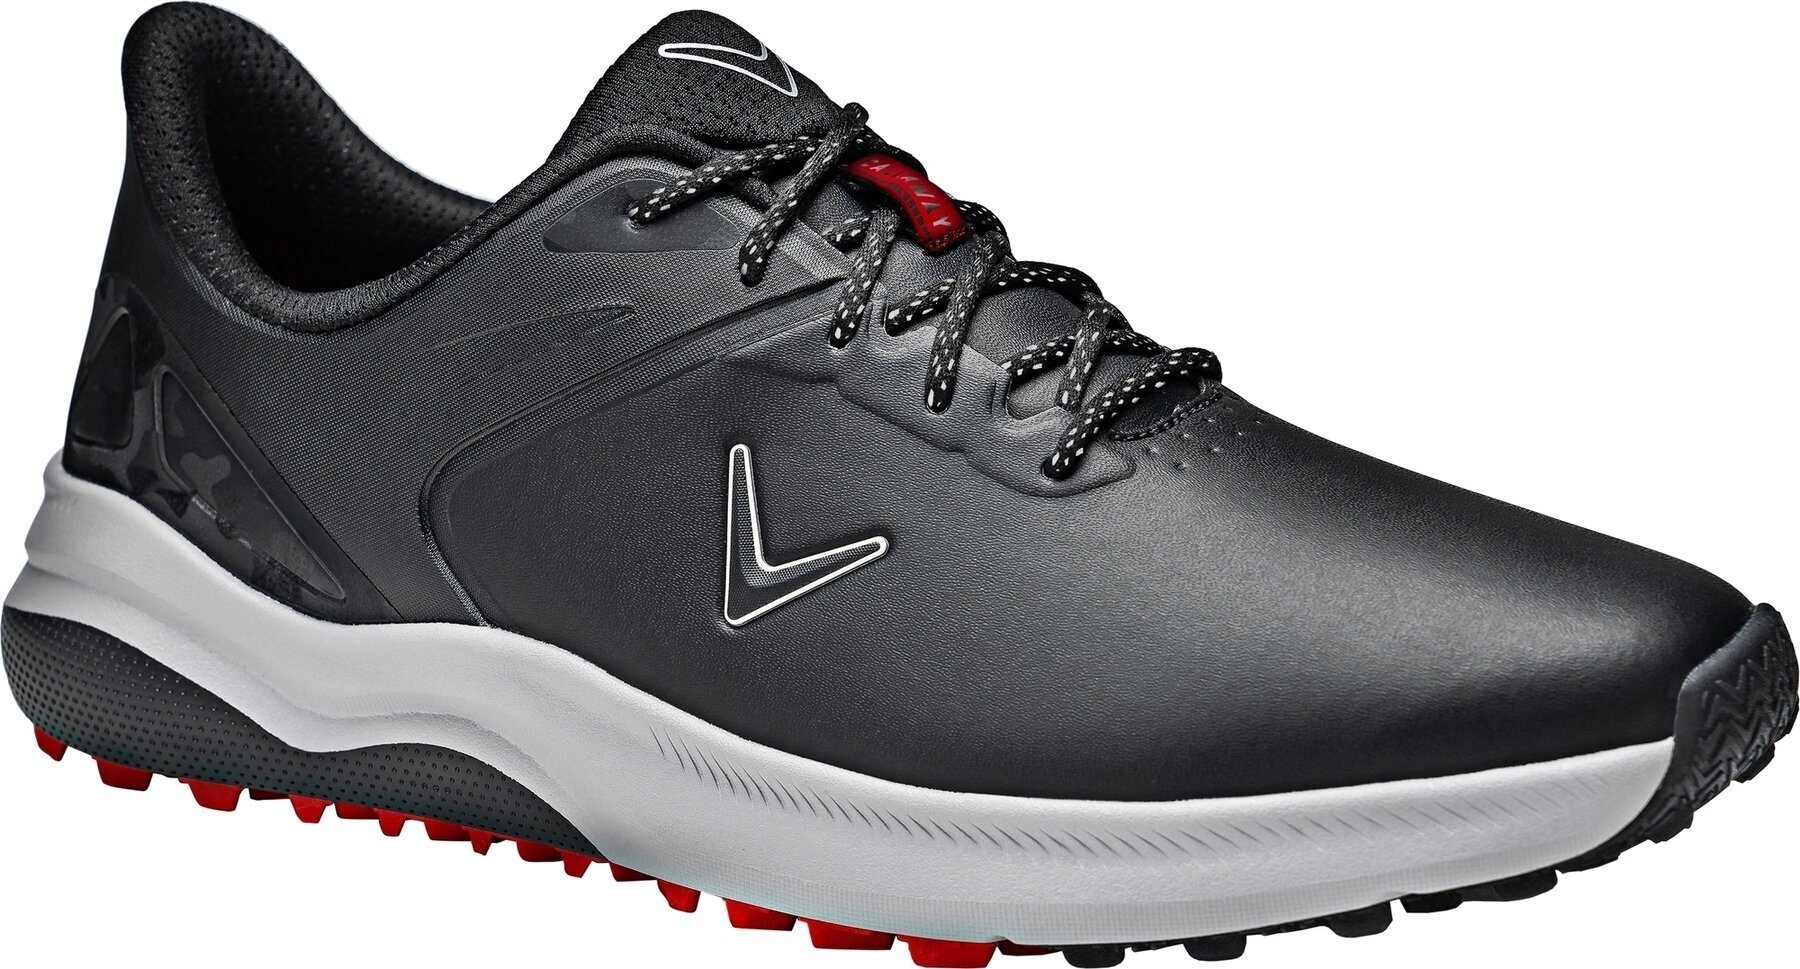 Heren golfschoenen Callaway Lazer Mens Golf Shoes Zwart 48,5